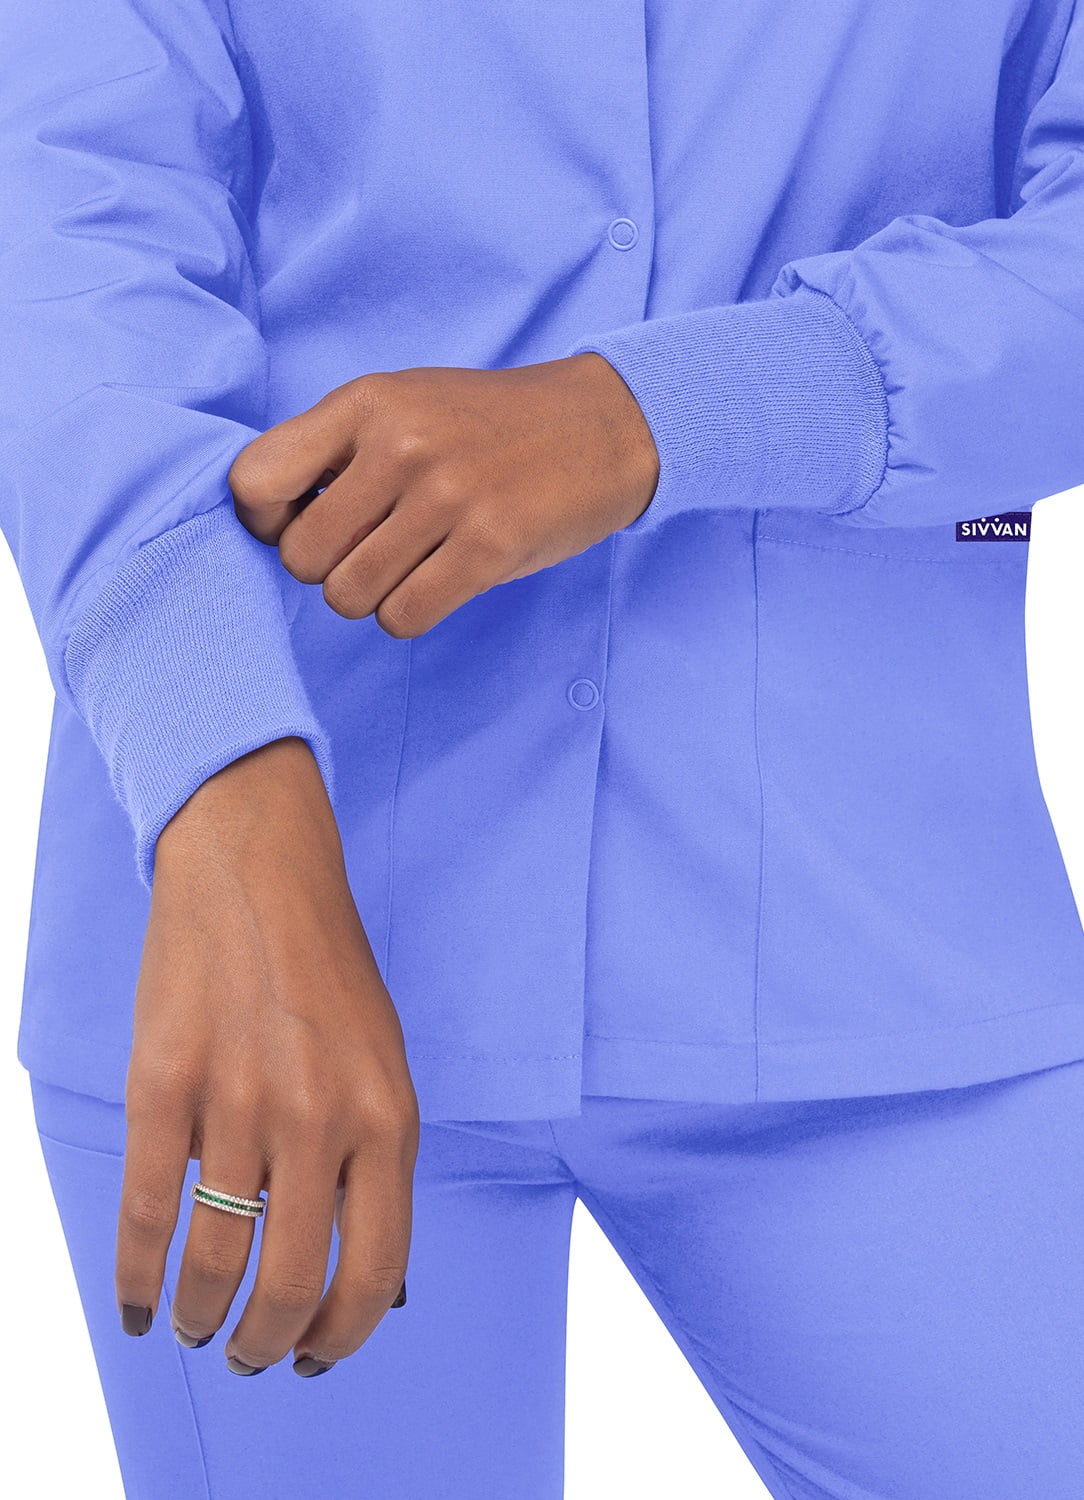 Ceil Blue Medium Round Neck Details about   Sivvan Women’s Scrub Warm-up Jacket/Front Snaps 